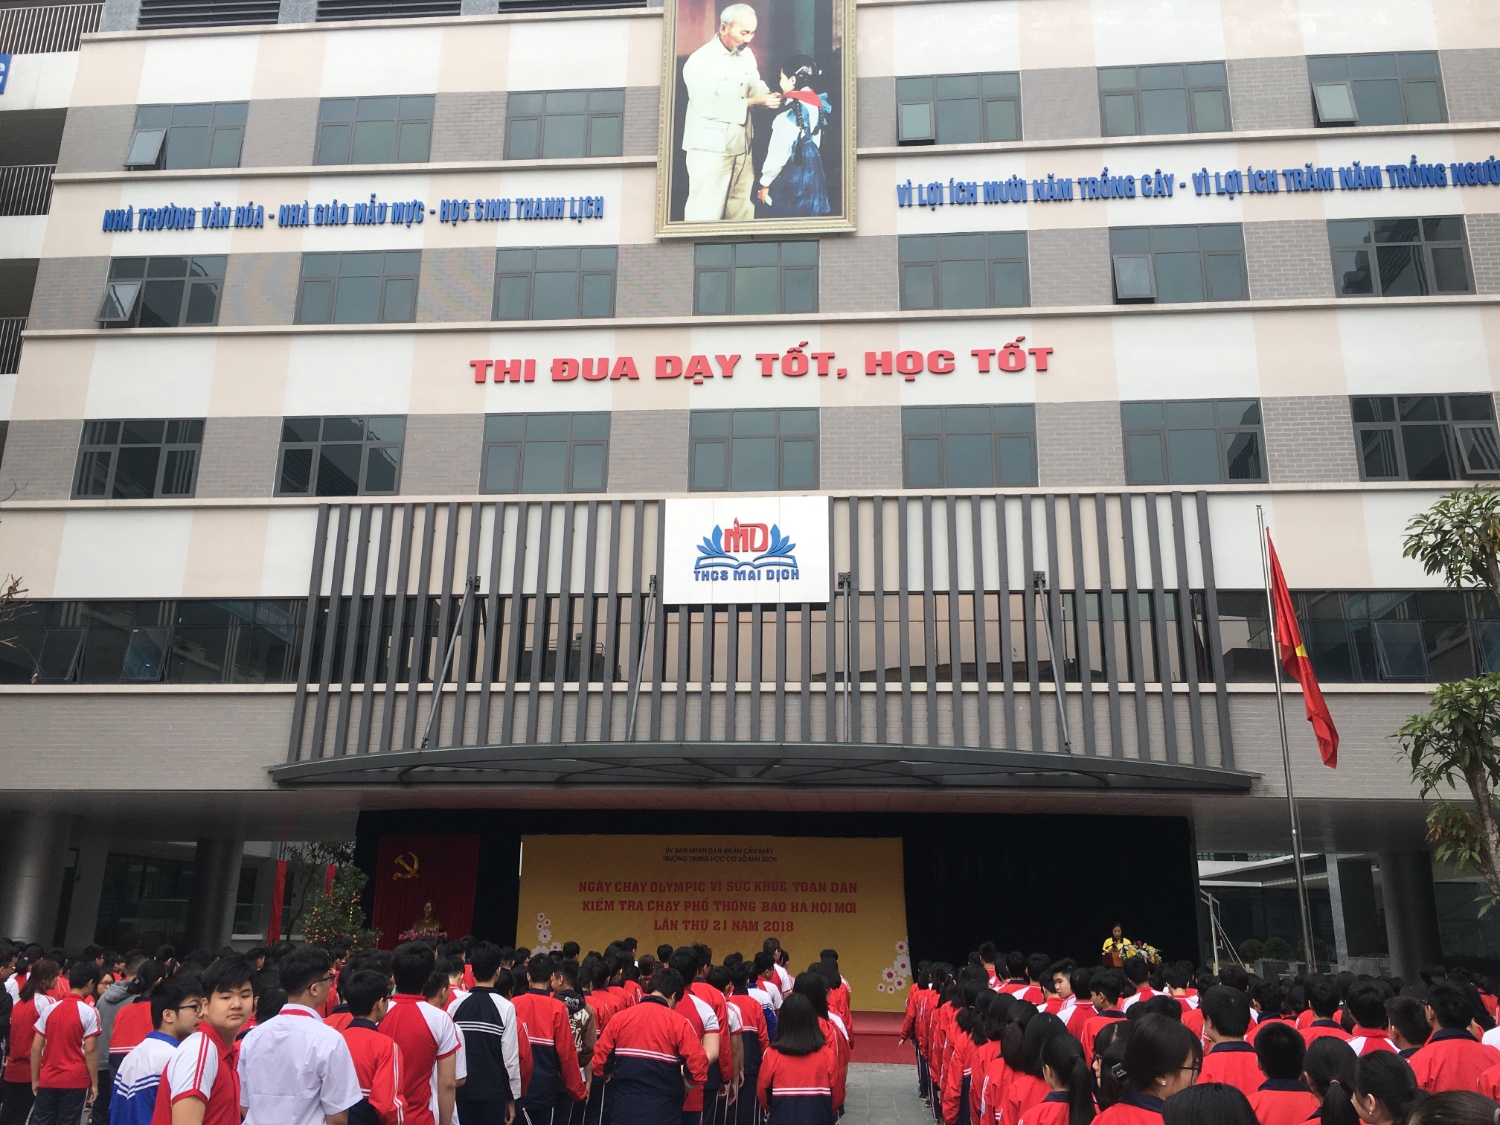 Ngày chạy Olympic vì sức khỏe toàn dân kiểm tra chạy phổ thông báo Hà Nội Mới lần thứ 21 năm 2018